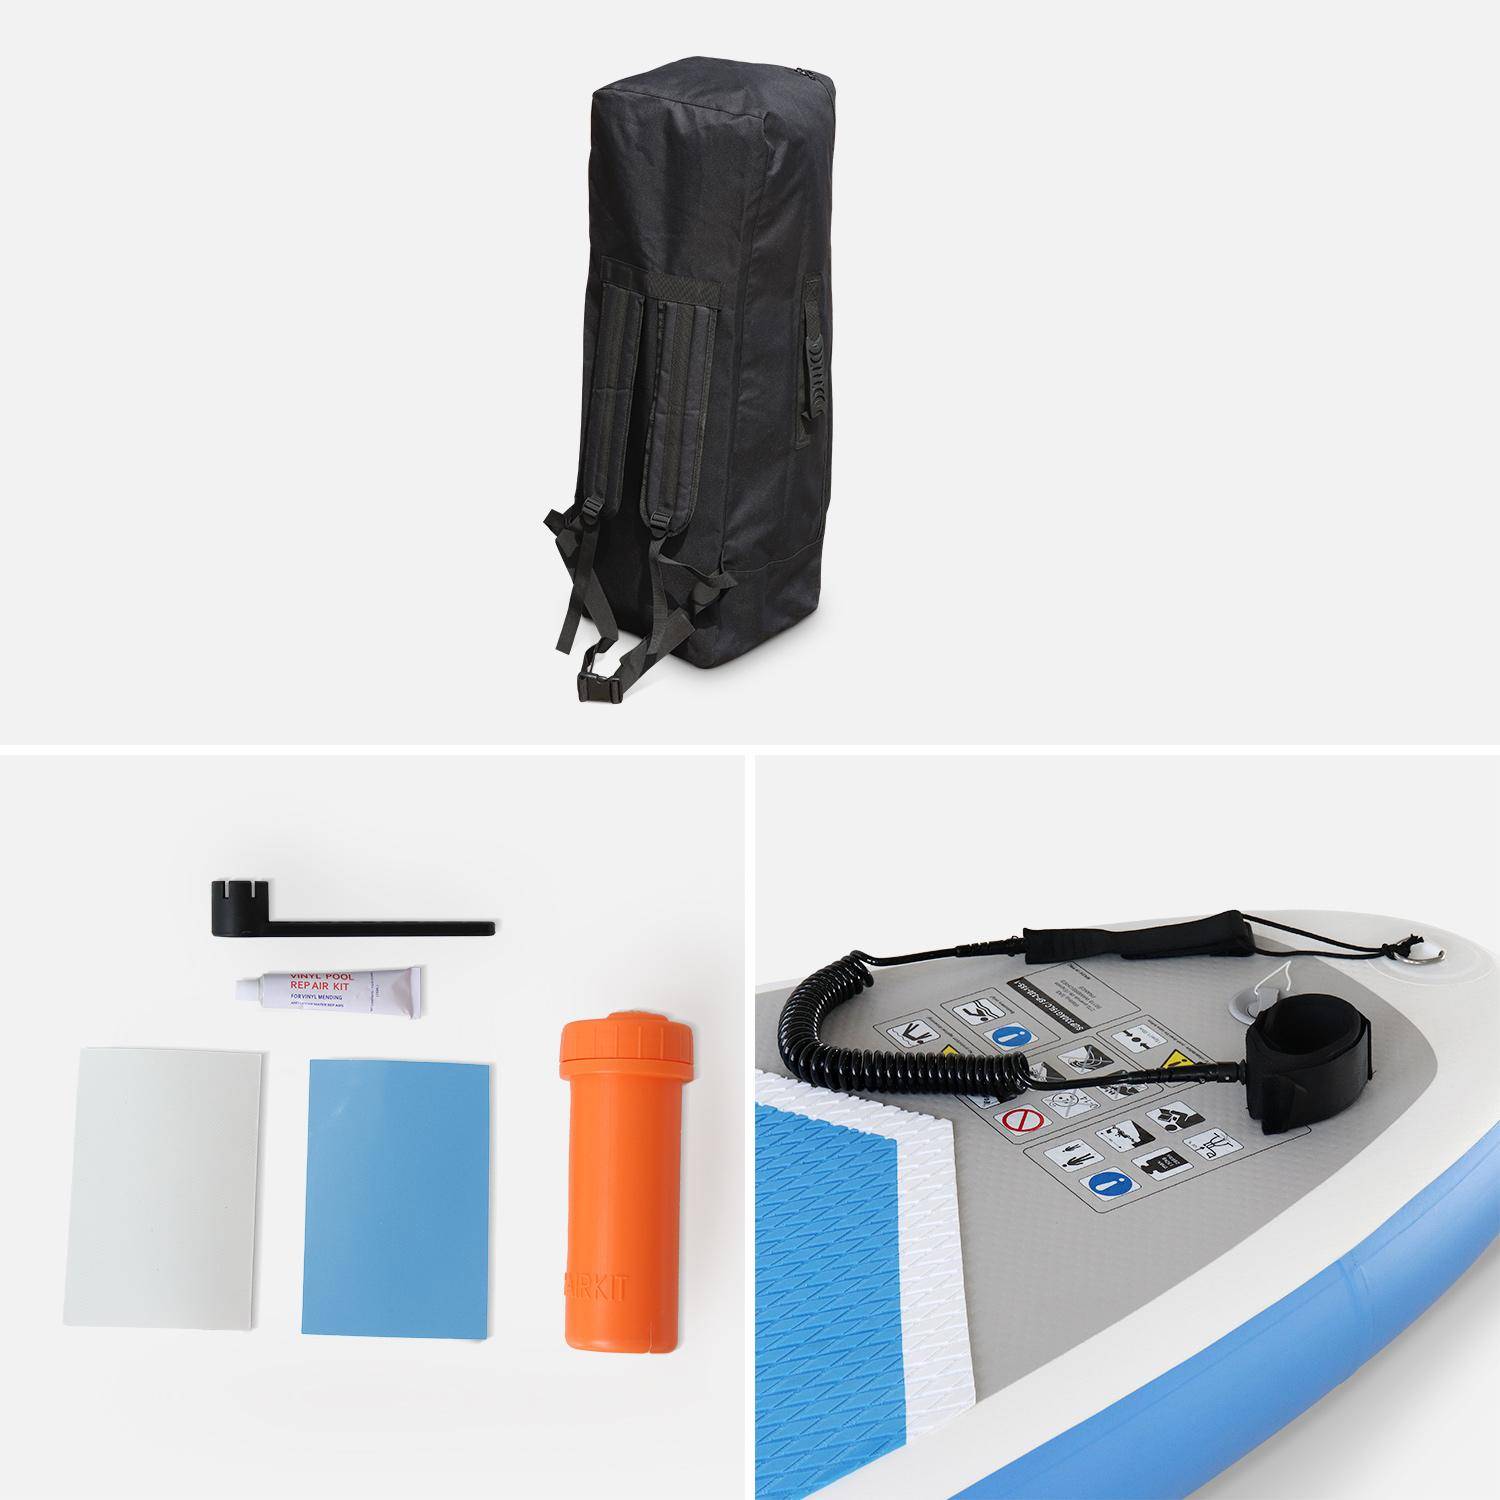 Opblaasbare stand-up paddle RICO pack 10'10" met hogedrukpomp, peddel, leash en opbergzak Photo4